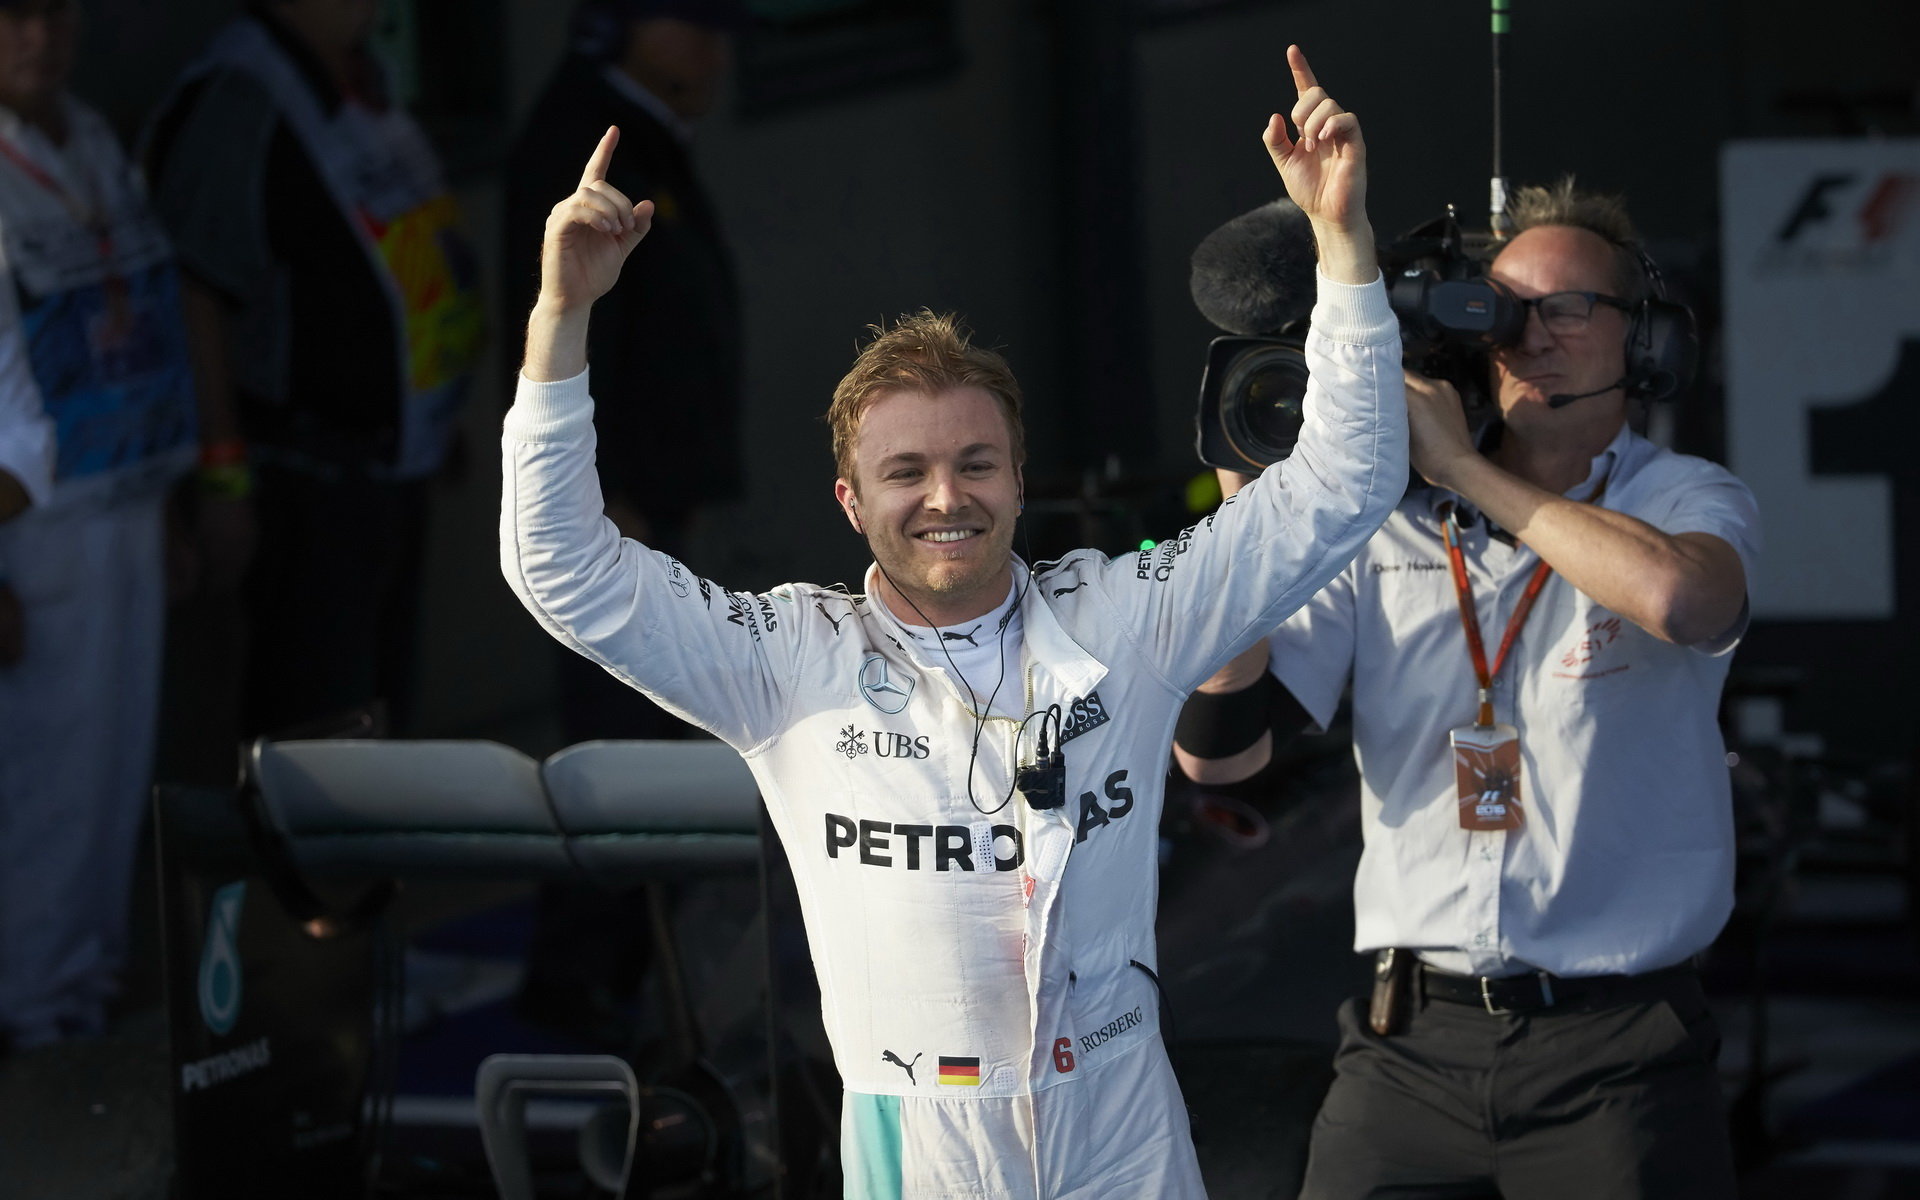 Nico Rosberg a jeho radost z vítězství v Melbourne